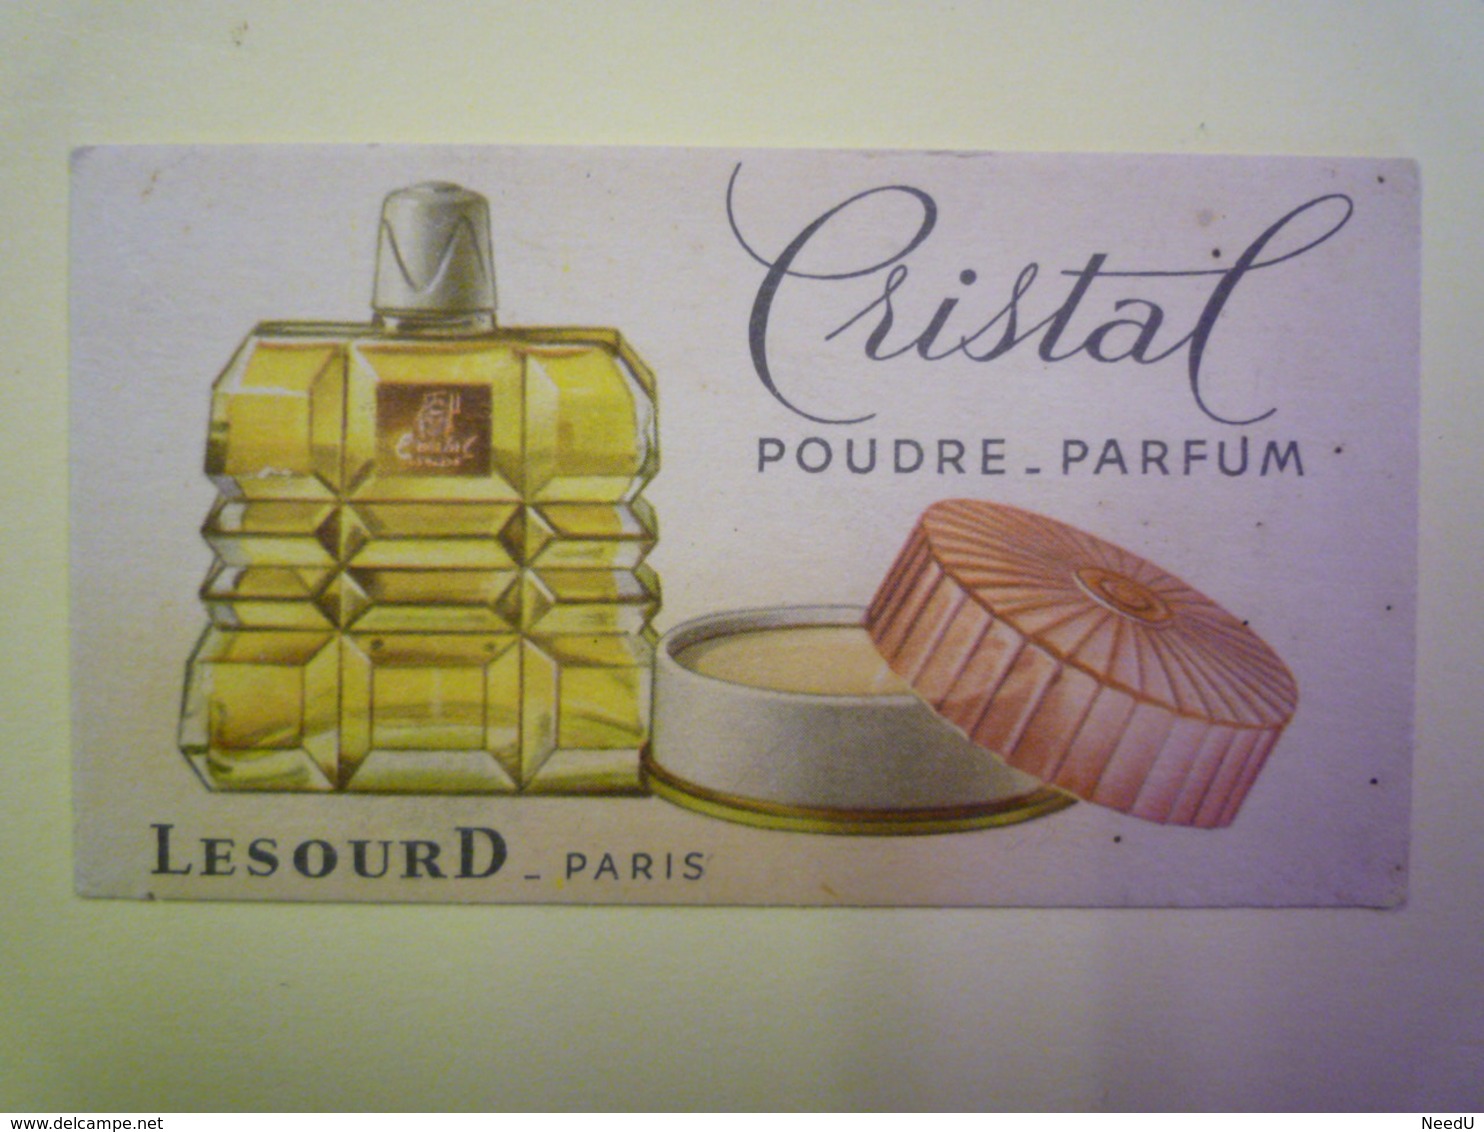 GP 2019 - 1267  CARTE Parfumée  "CRISTAL"  Poudre - Parfum  (LESOURD  -  Paris)   XXX - Anciennes (jusque 1960)